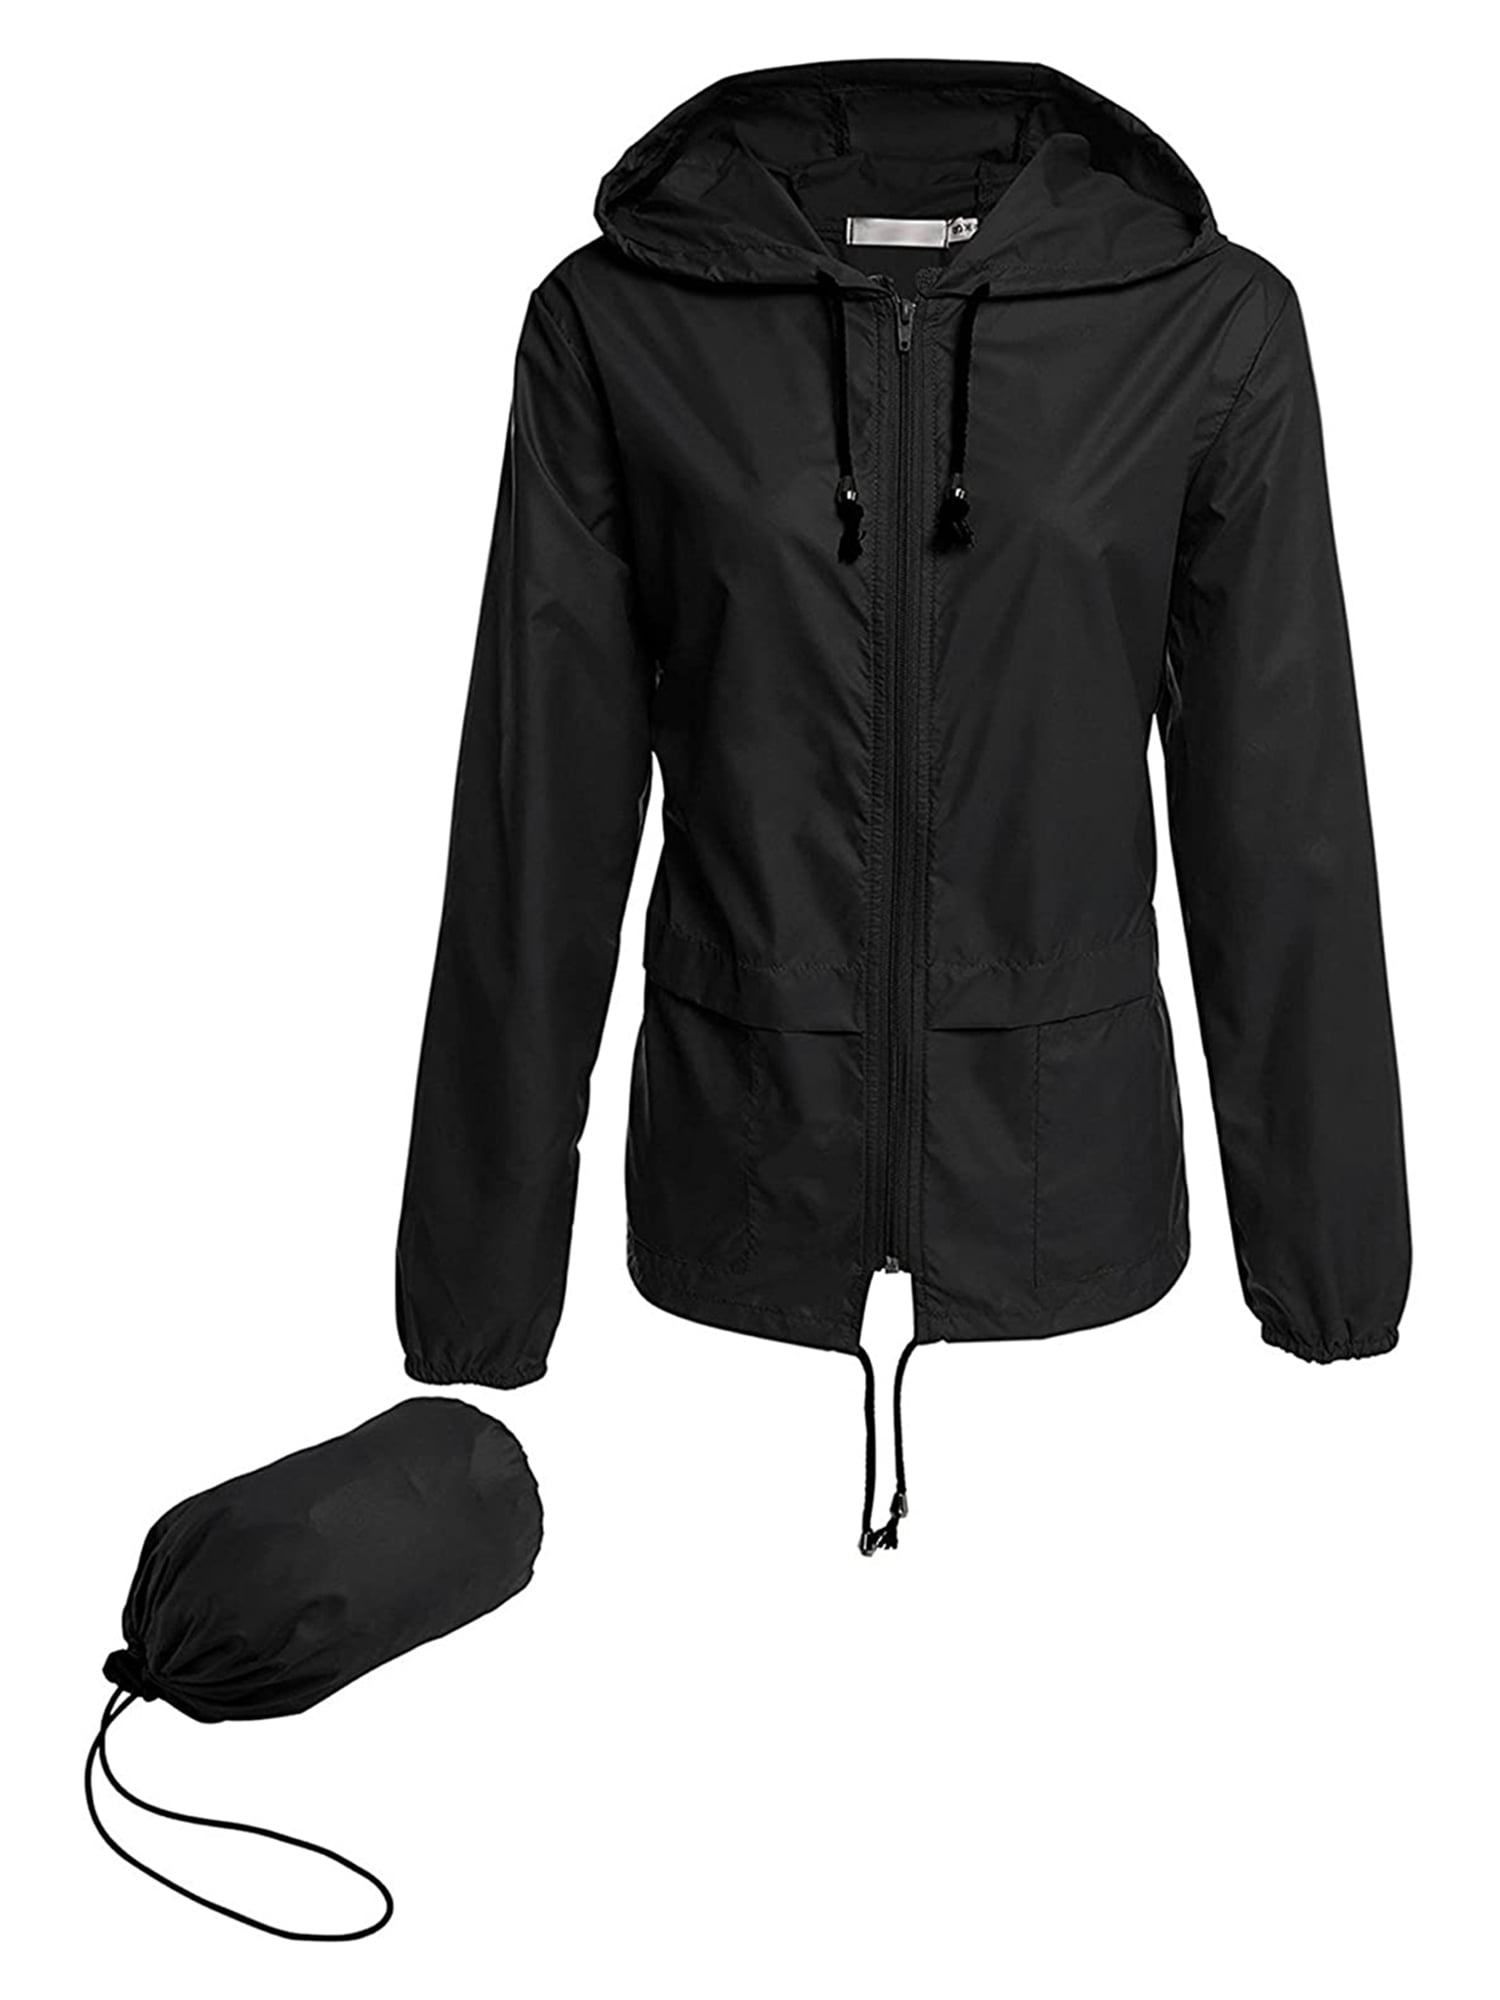 Avoogue Mens Breathable Rain Jacket Waterproof with Hood Windbreaker All Weather 